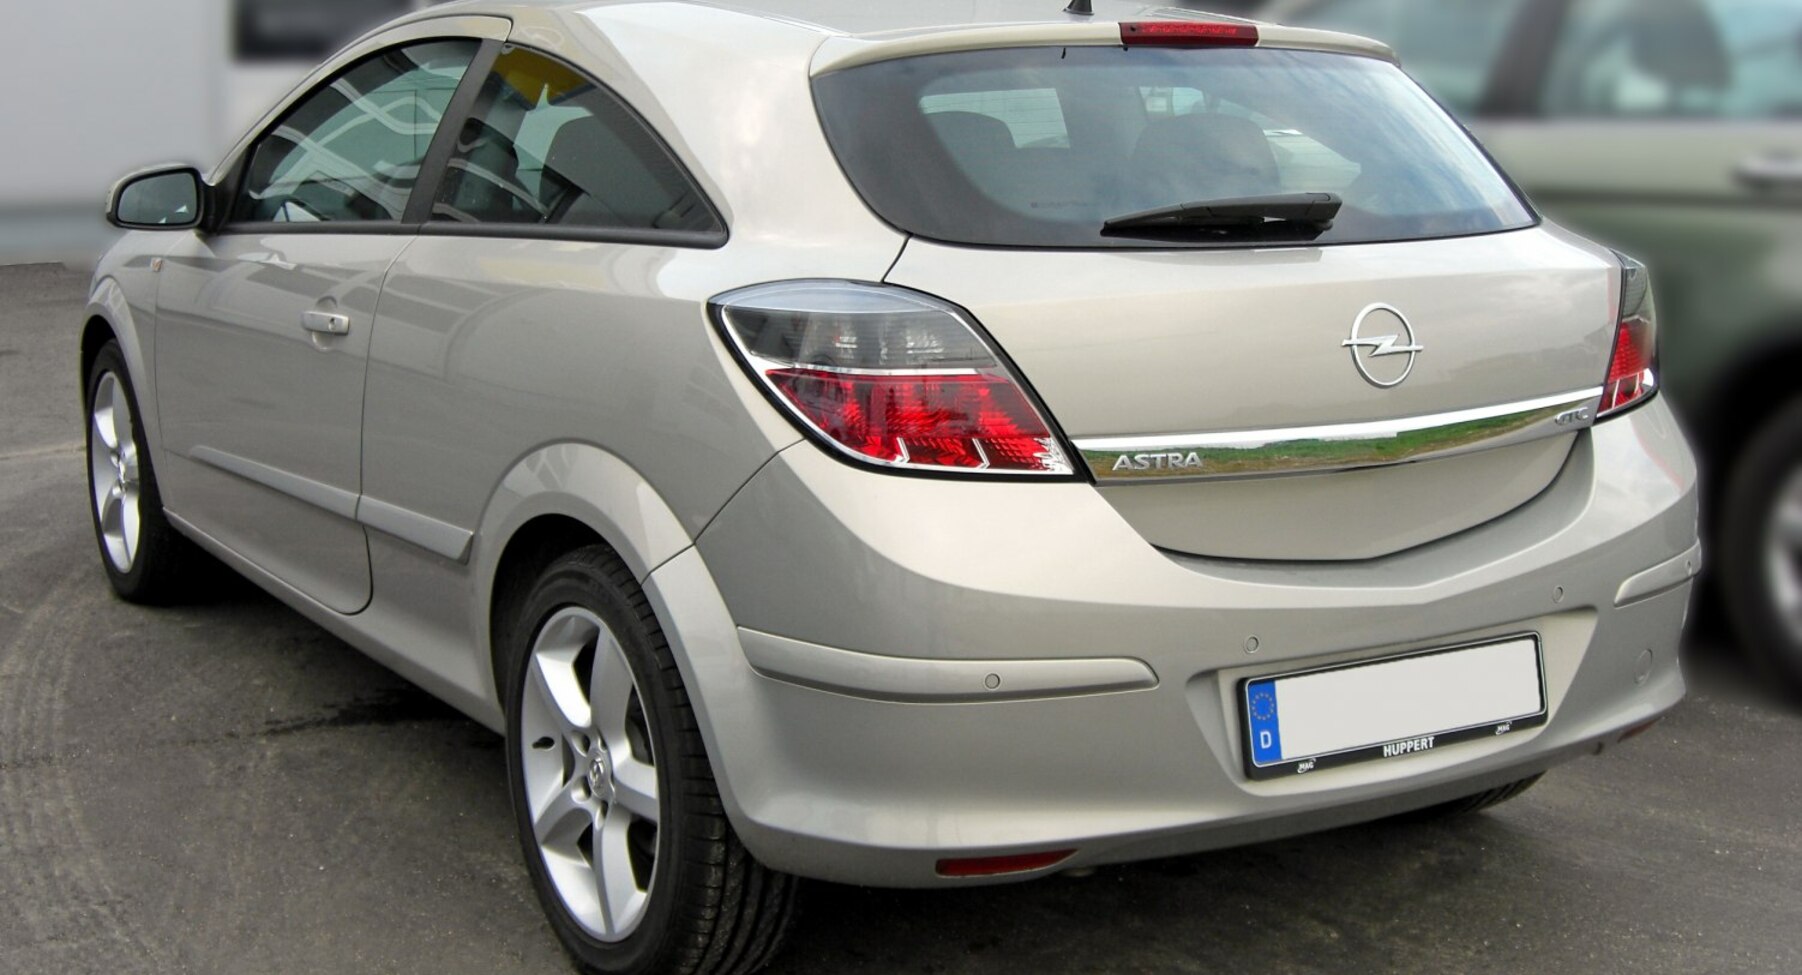 Opel Astra H GTC 1.6i 16V (115 Hp) 2008, 2009 specifications